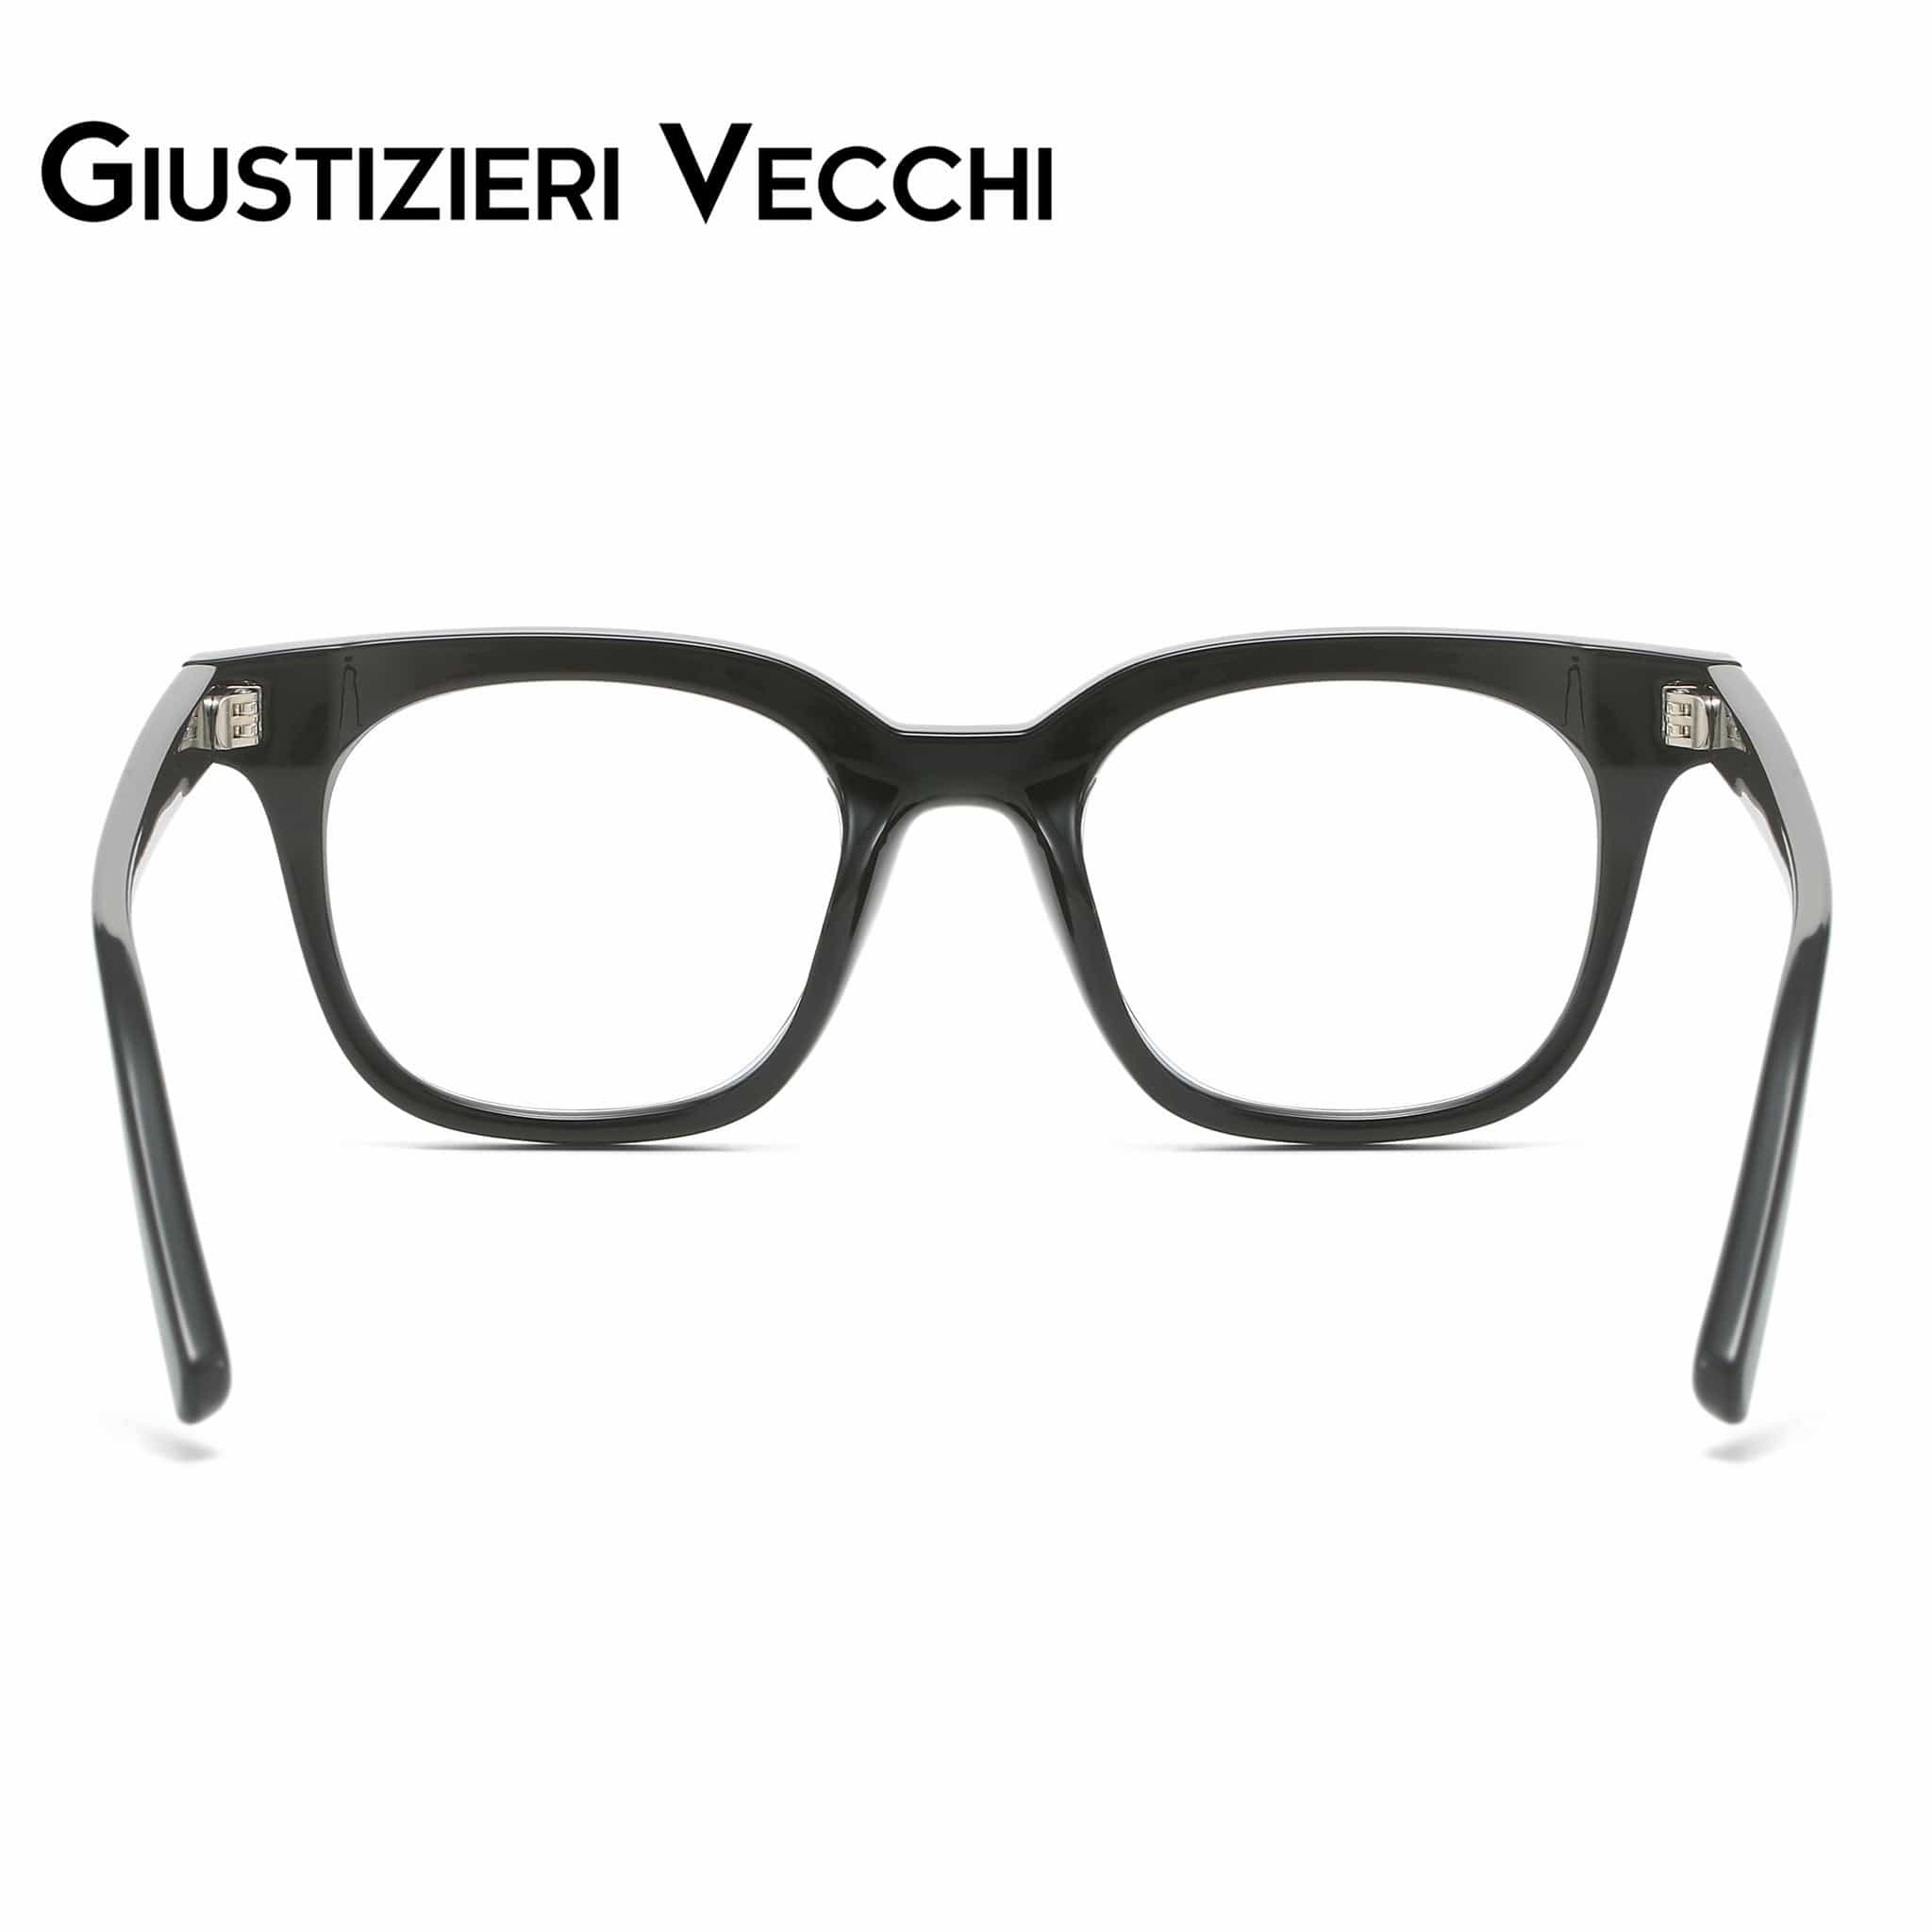 GIUSTIZIERI VECCHI Eyeglasses Phantom Uno